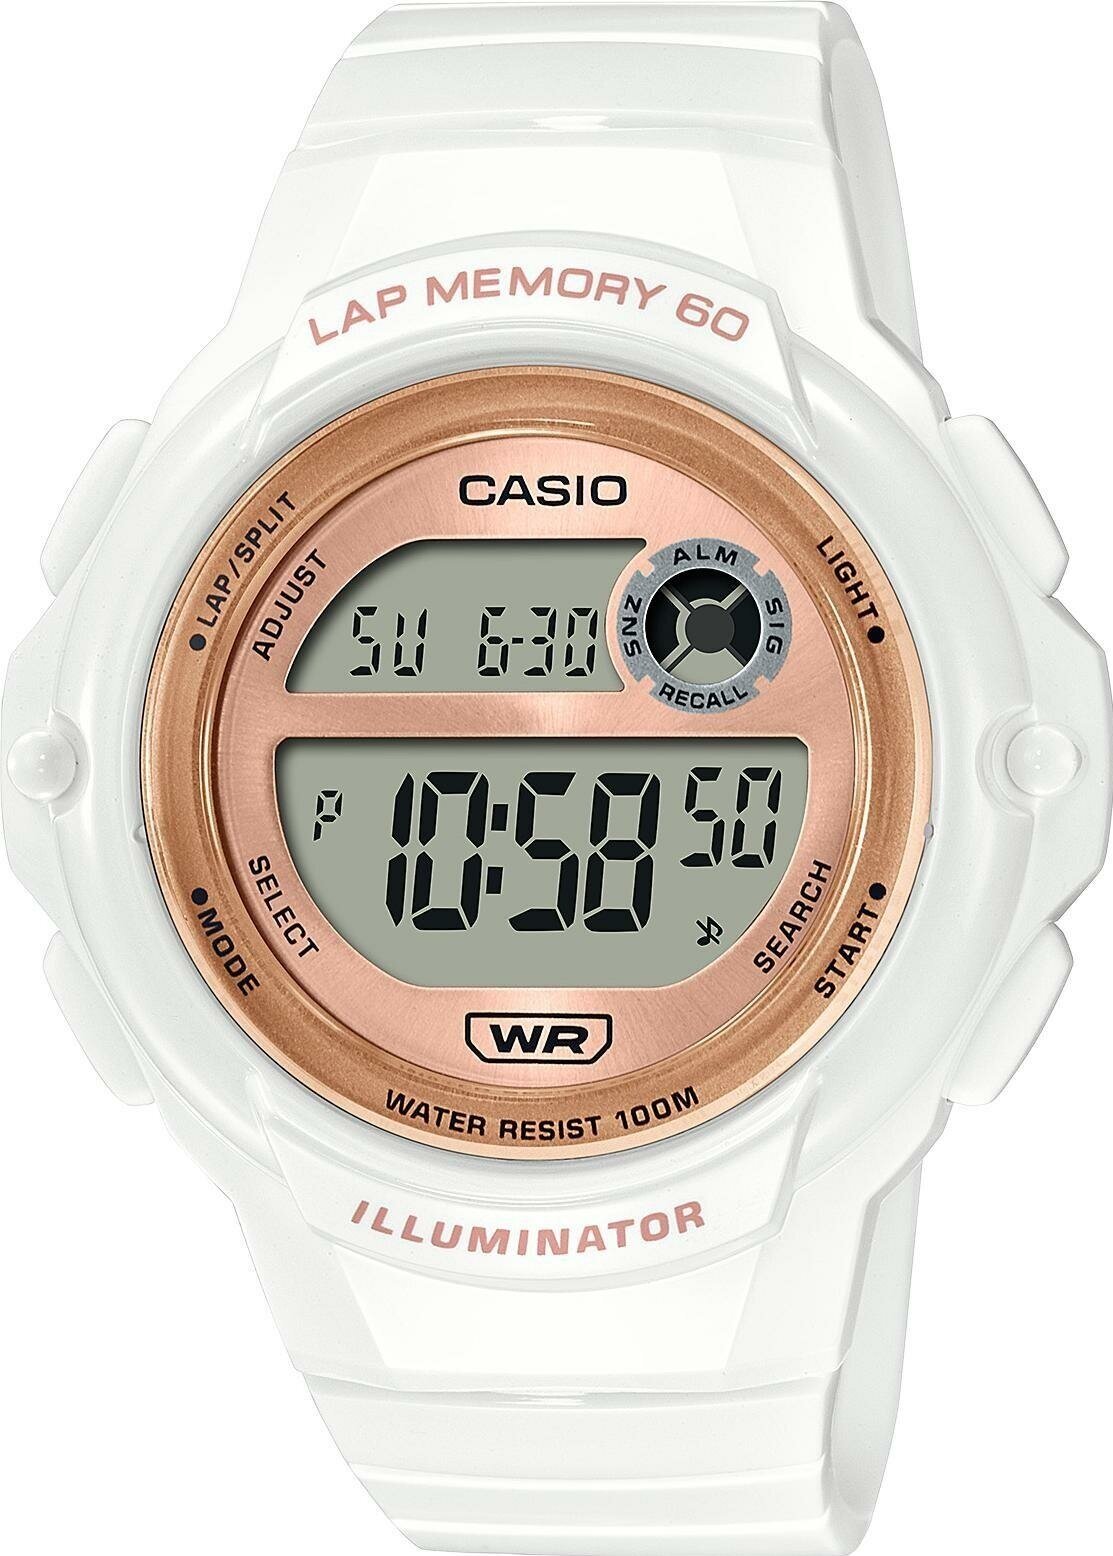 Наручные часы CASIO Collection LWS-1200H-7A2